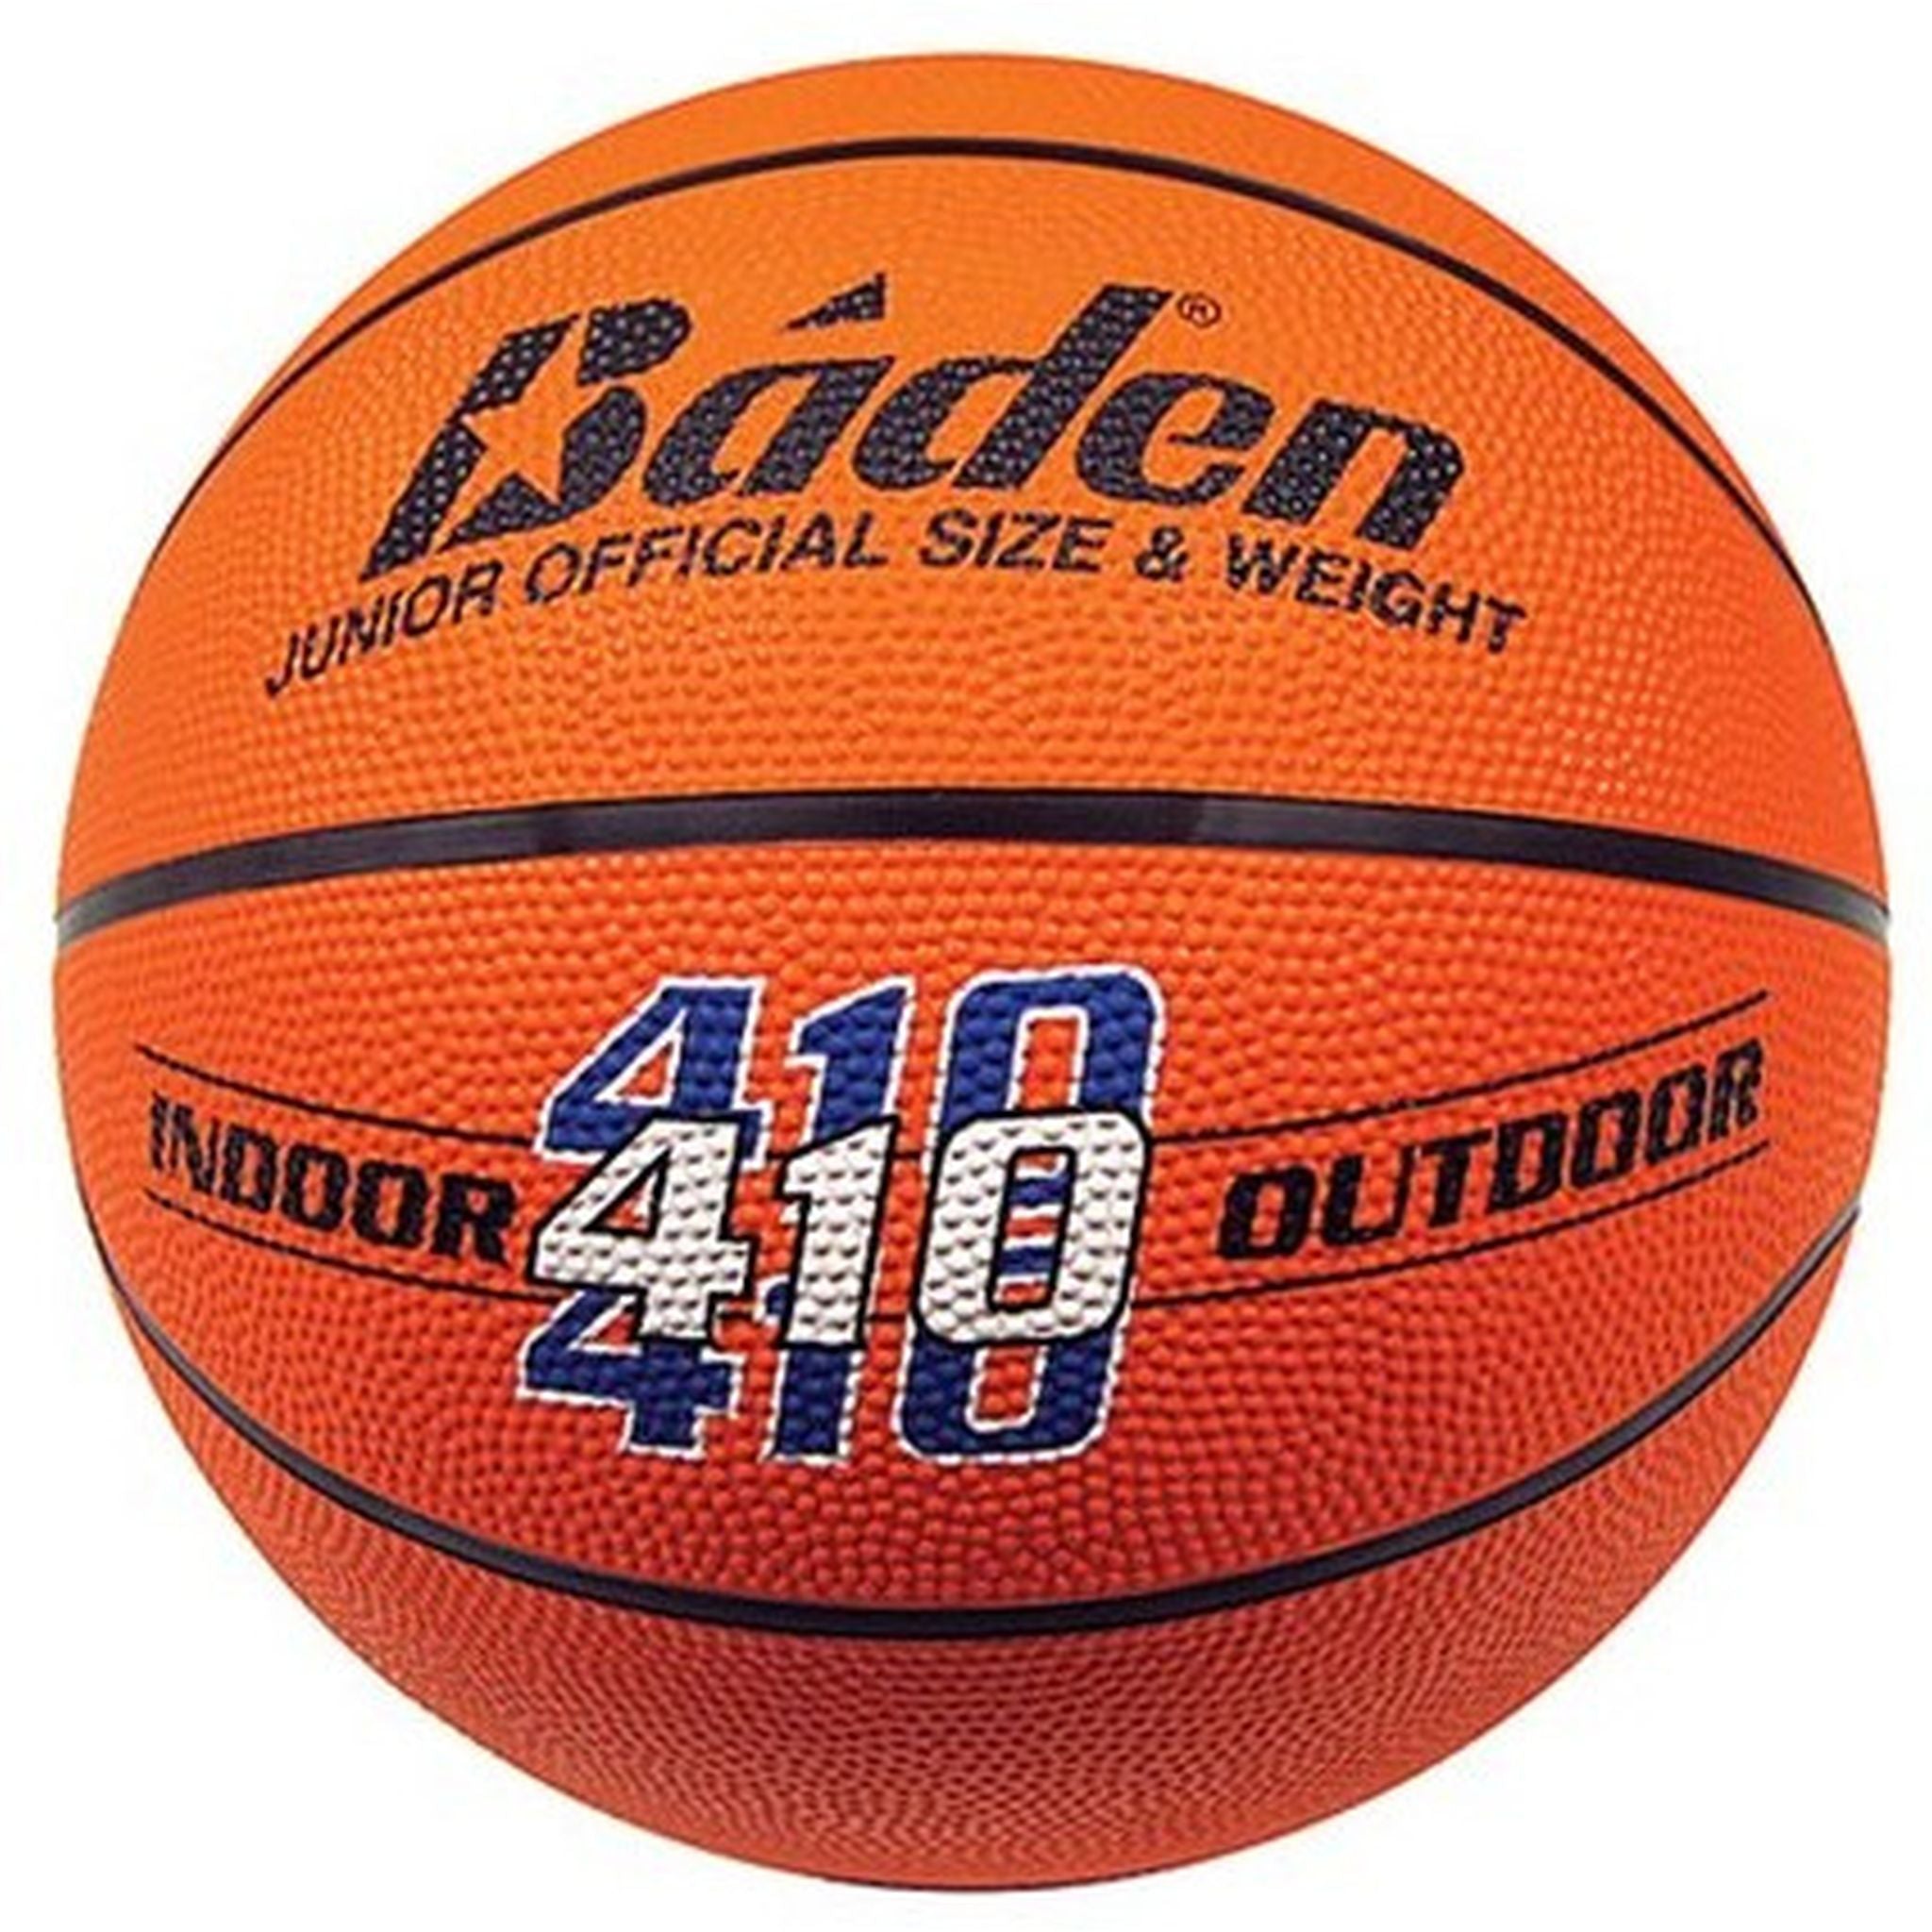 BADEN 410 Rubber Basketball